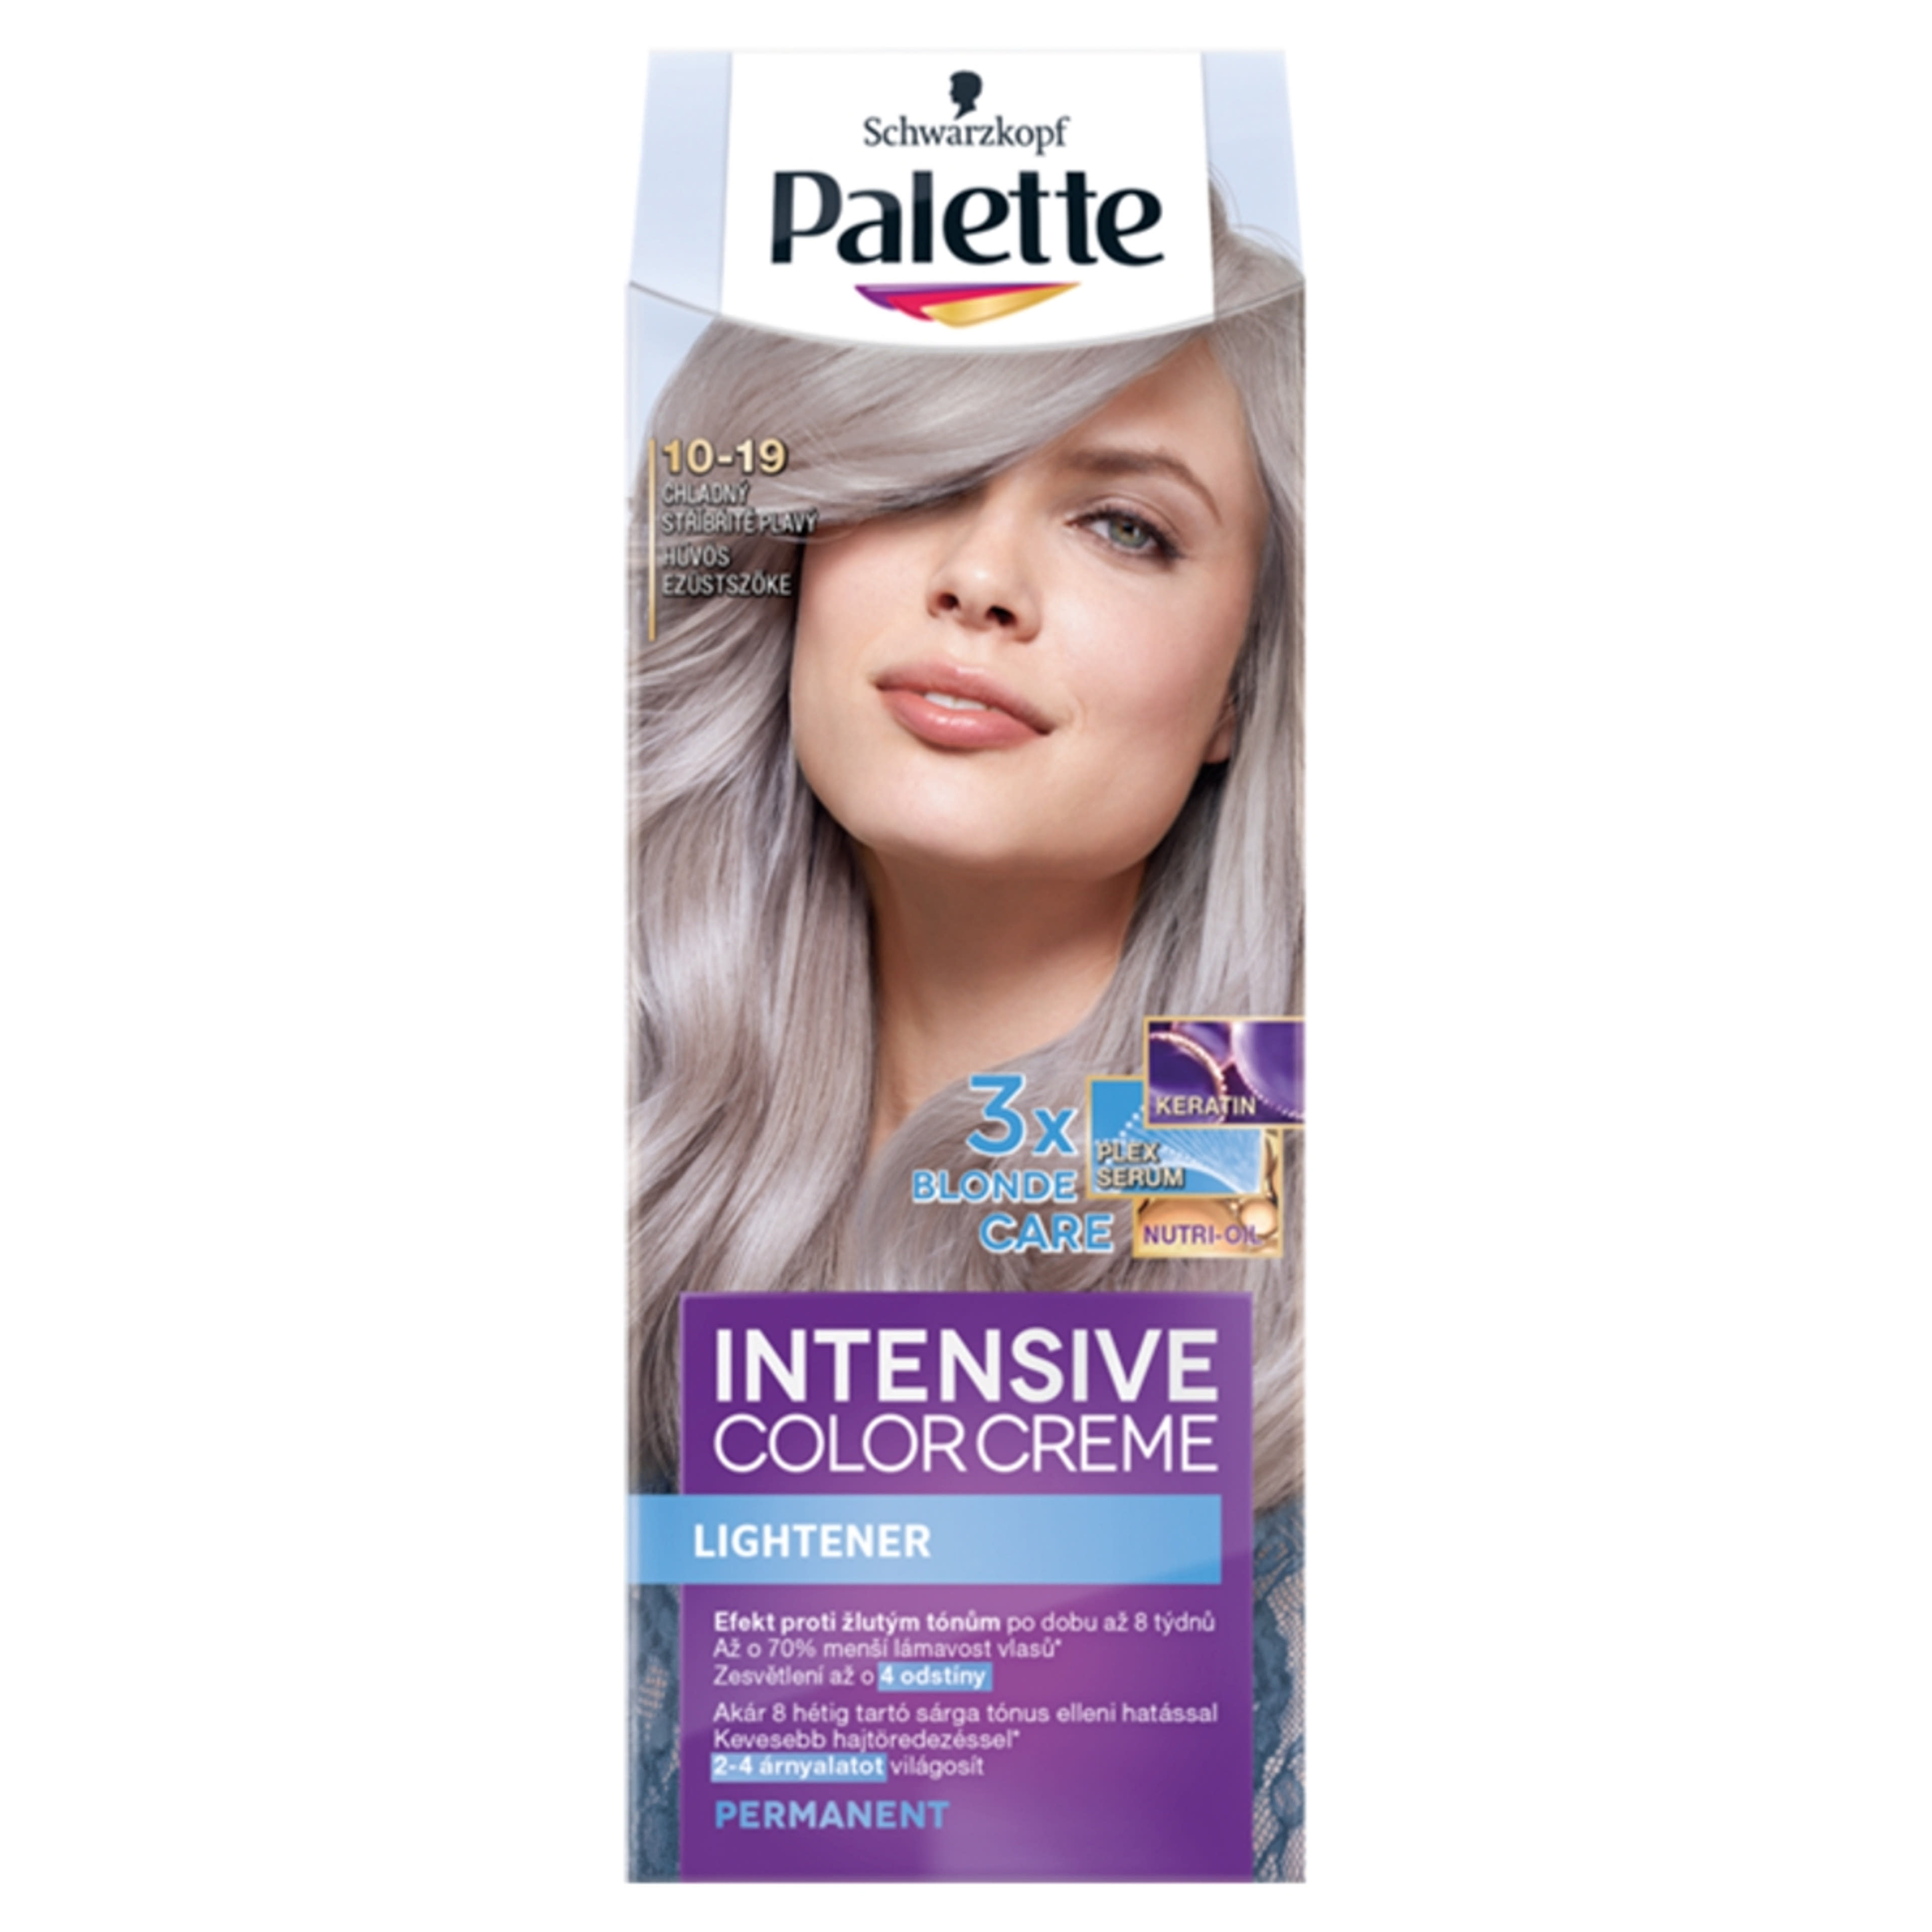 Palette Intensive Color Creme 10-19 hűvös ezüstszőke - 1 db-1